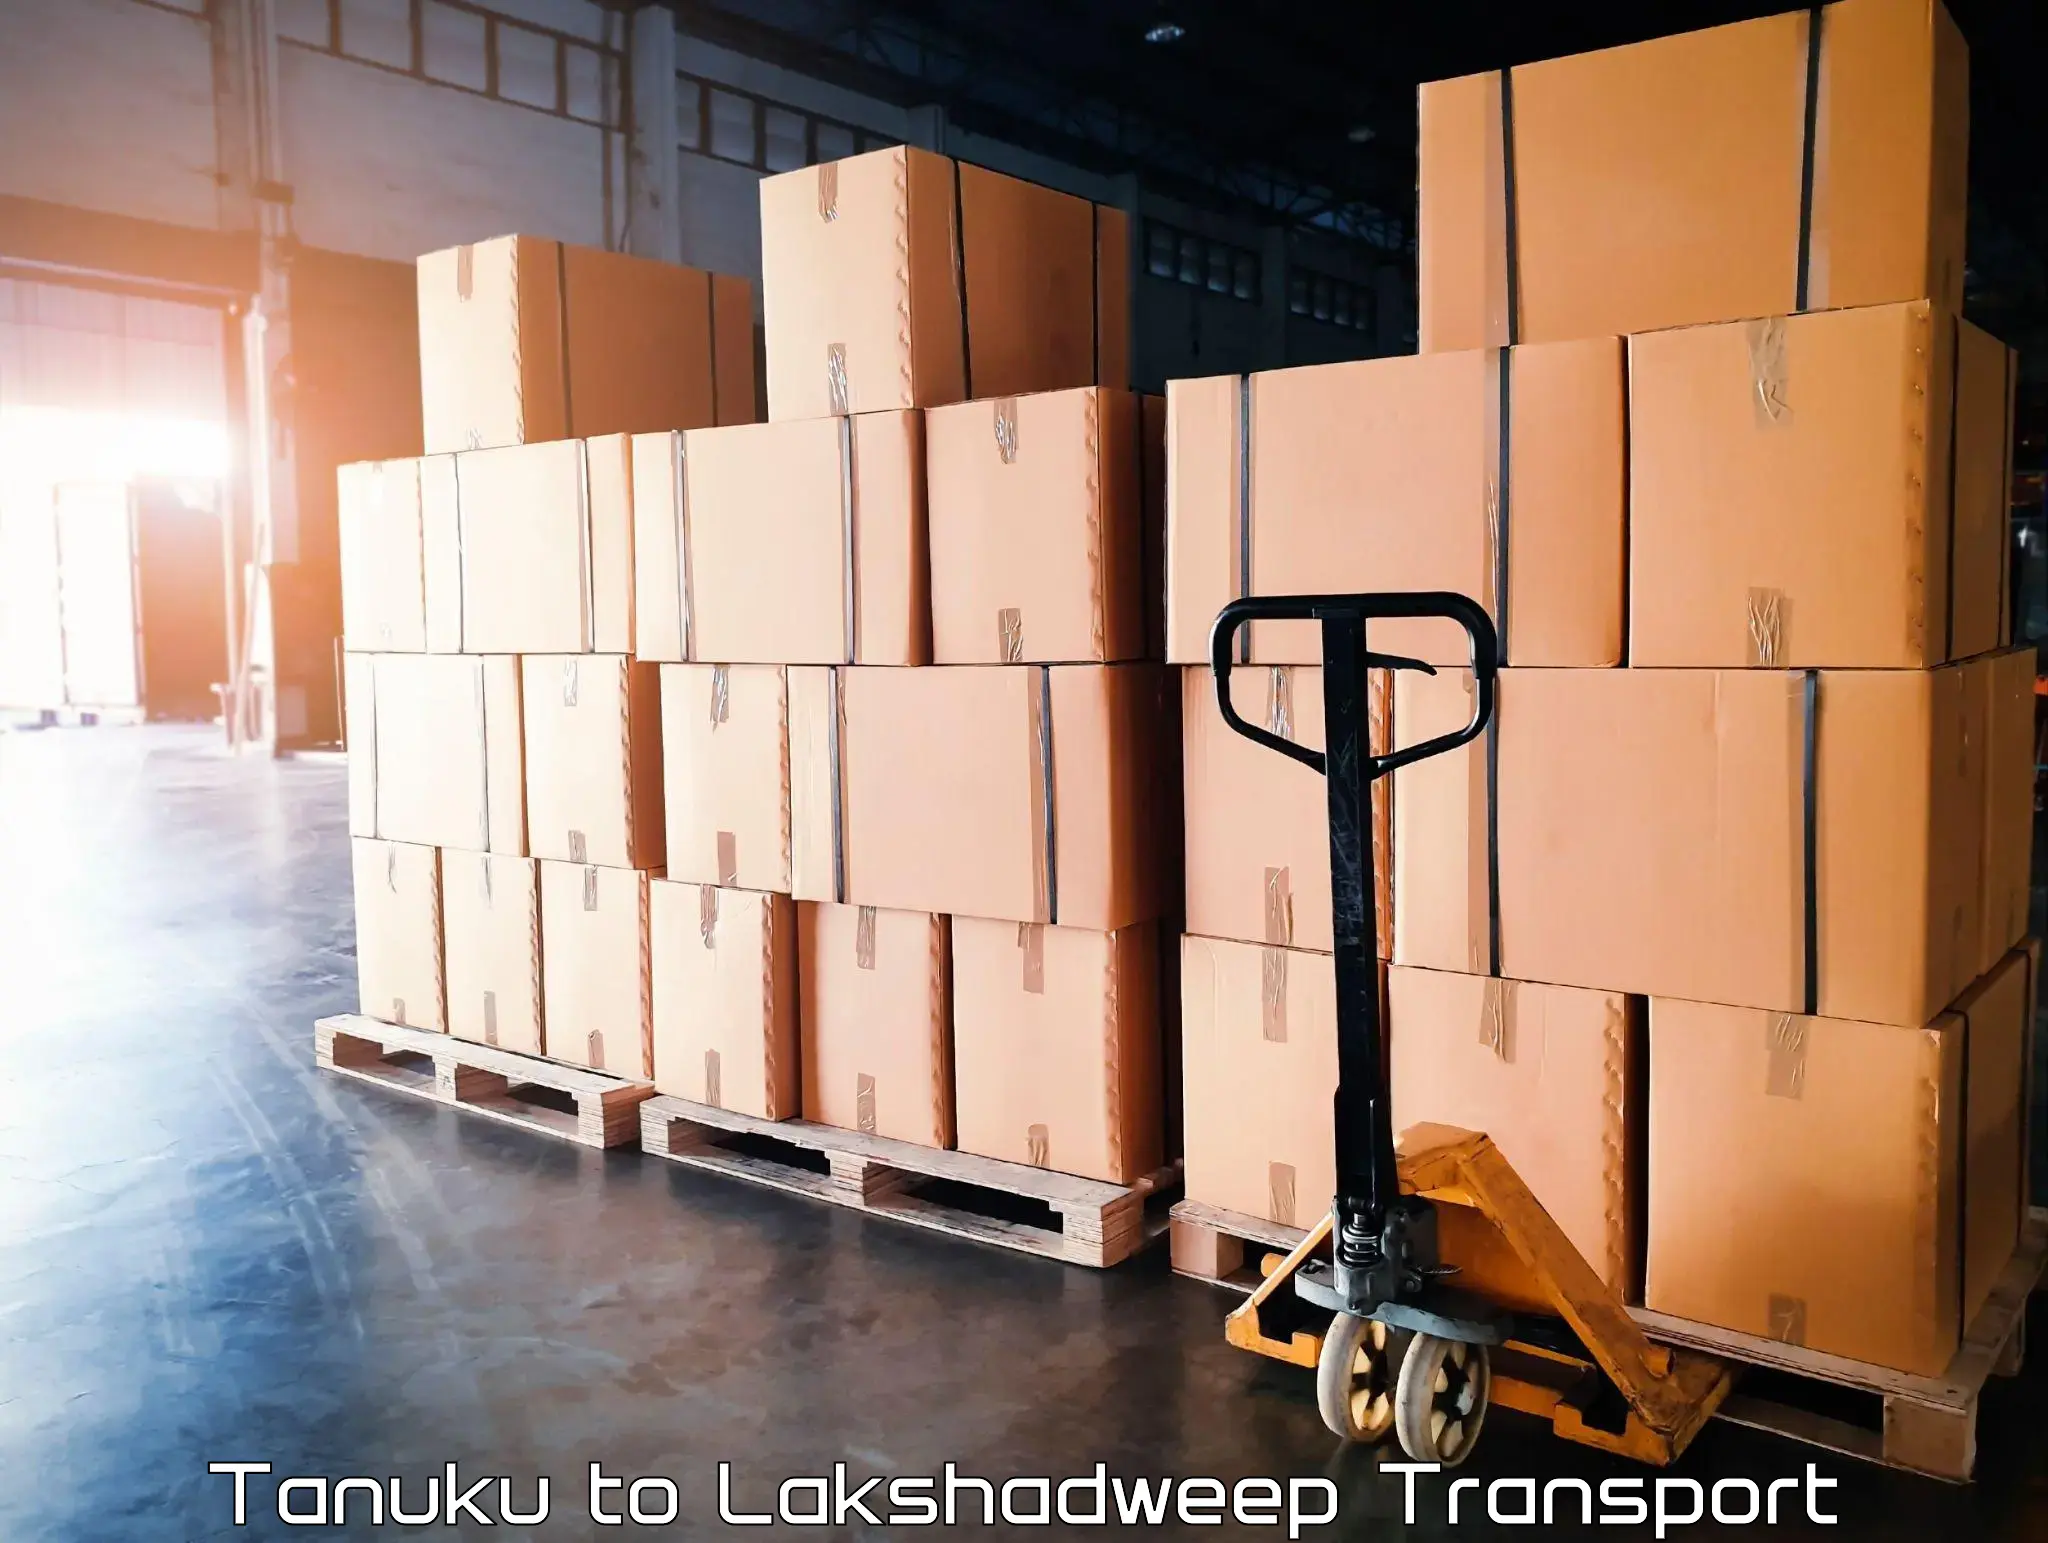 Pick up transport service Tanuku to Lakshadweep